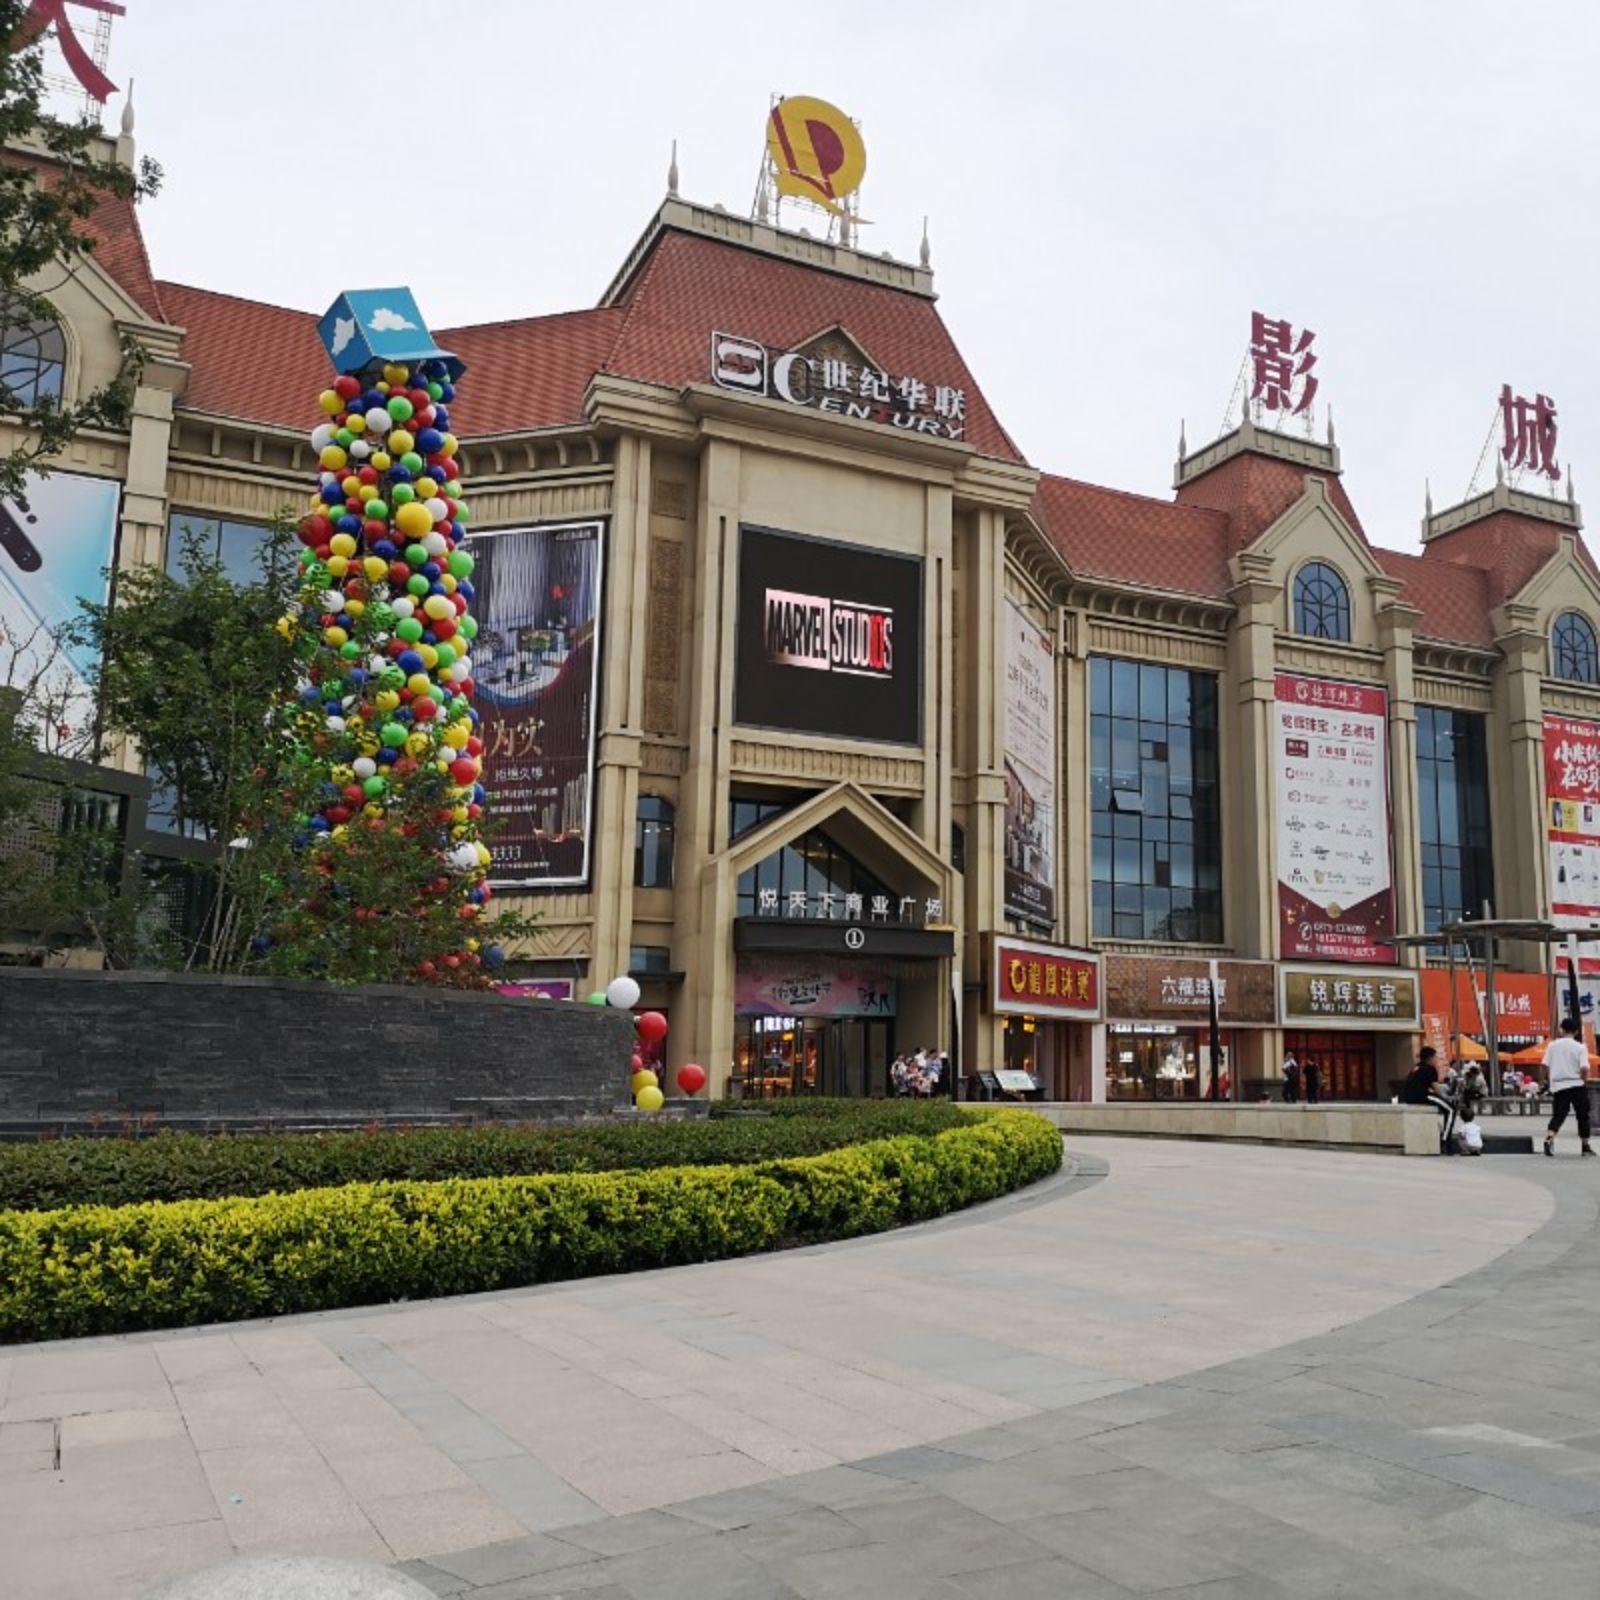 长沙恒大悦湖商业广场图片